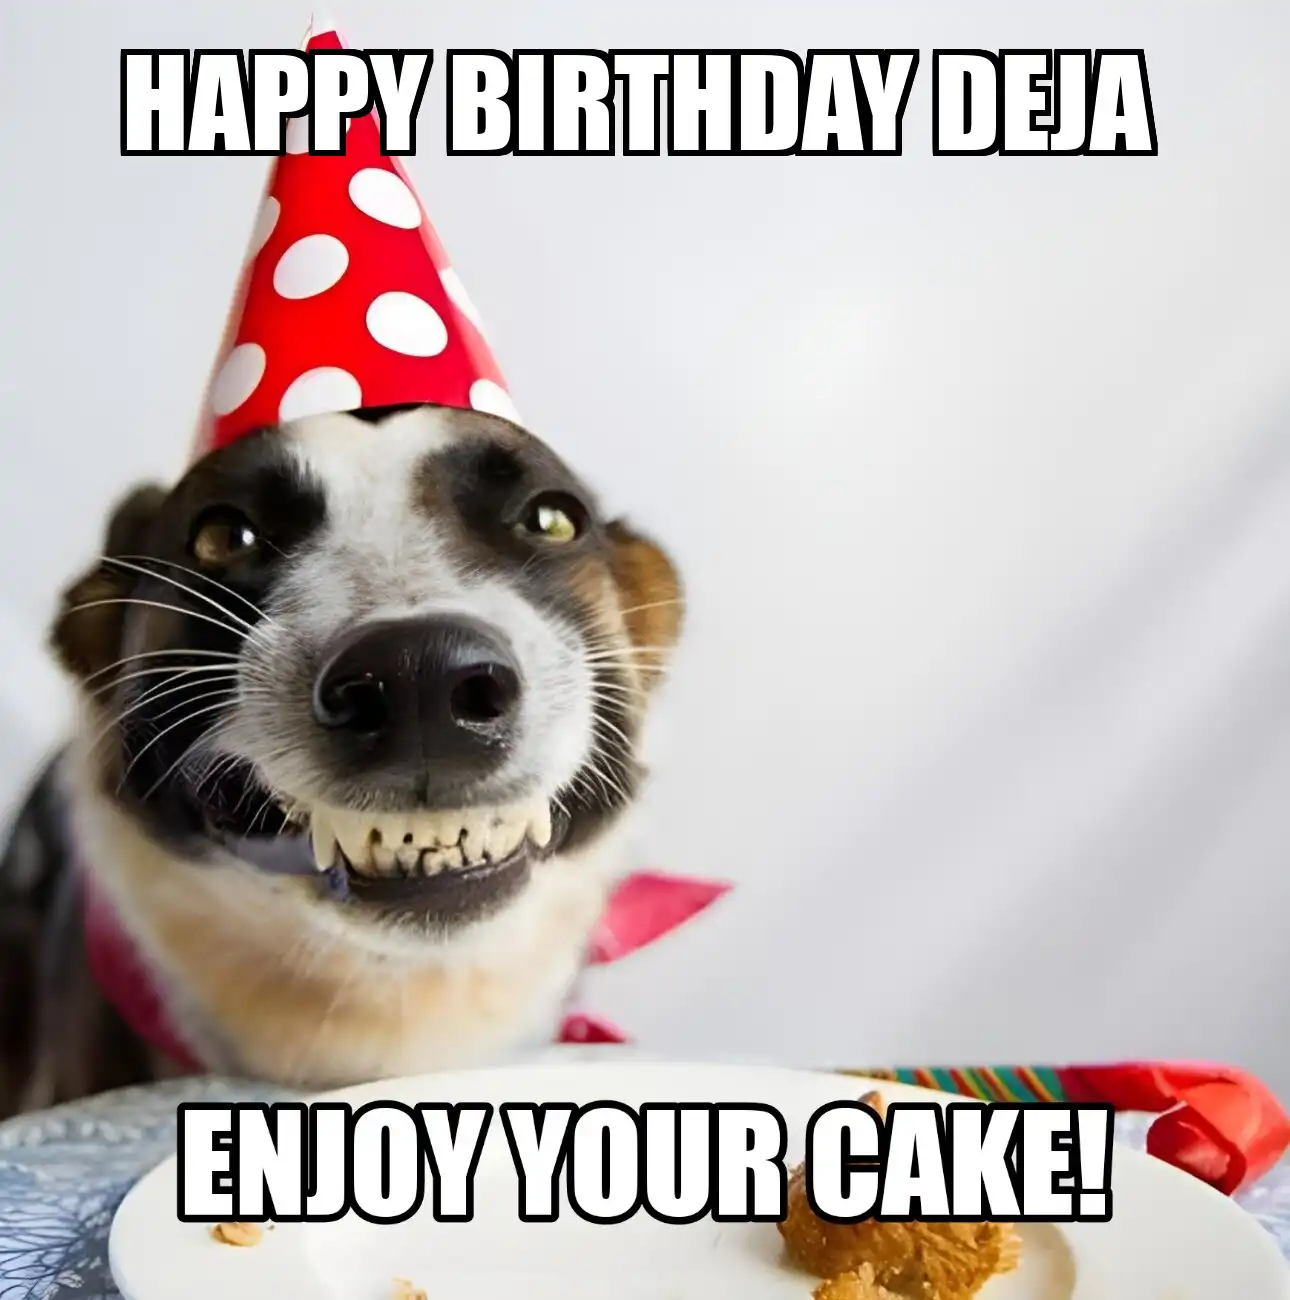 Happy Birthday Deja Enjoy Your Cake Dog Meme